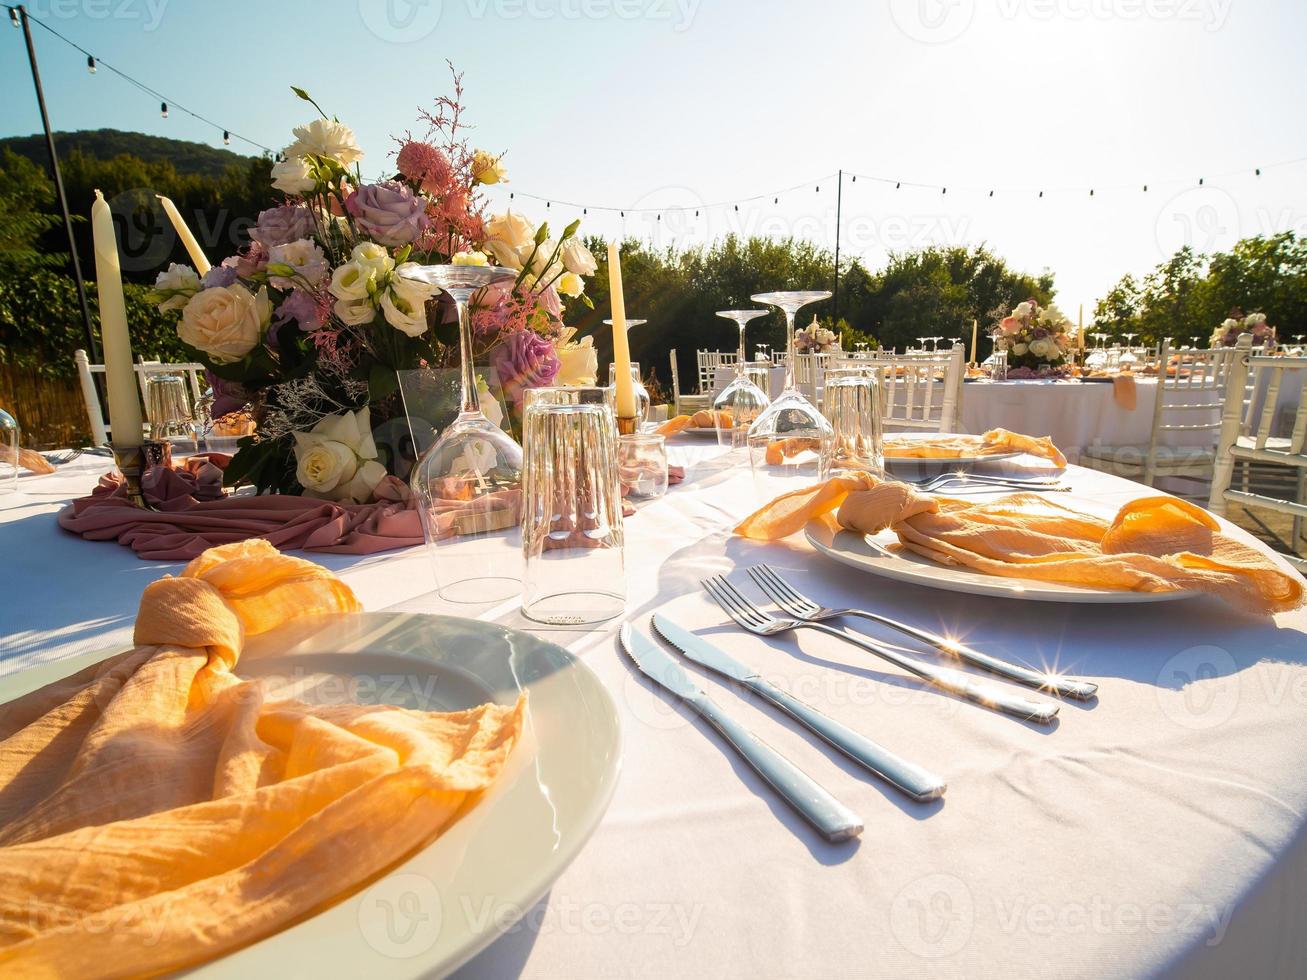 Tabelle beim Luxus Hochzeit Rezeption Fall. schön Blumen auf Tabelle und Portion Geschirr und Brille und Dekoration foto